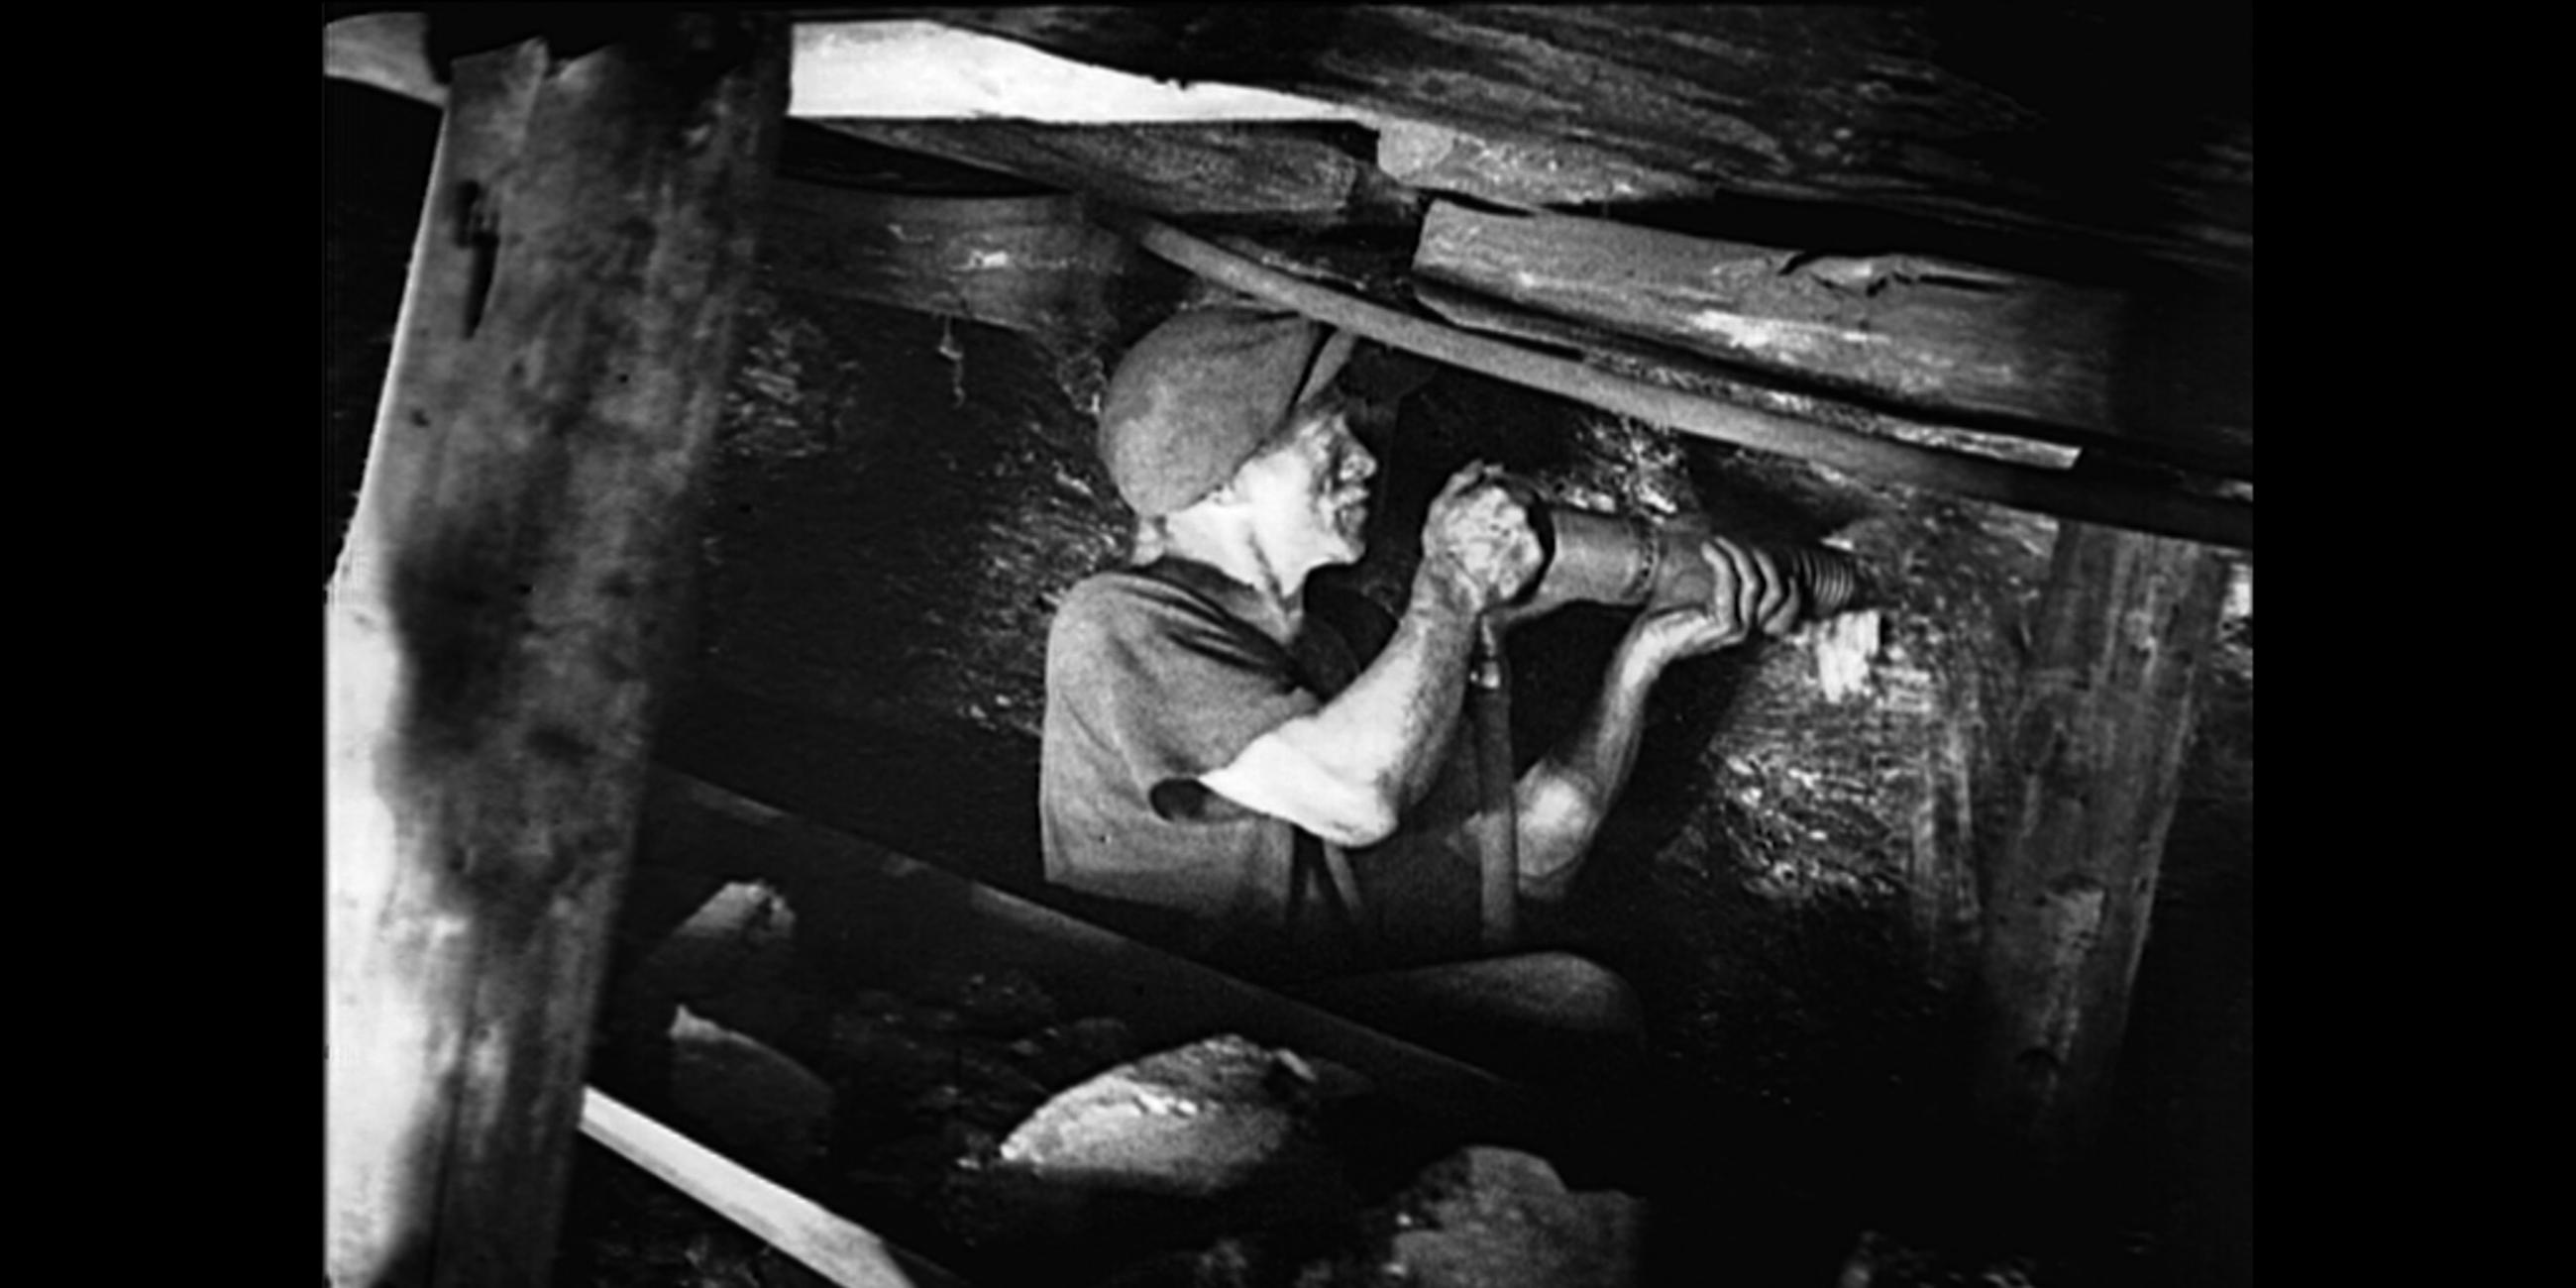 Schwarz-weiß Fotografie eines Bergarbeiters im Stollen, der bohrt.